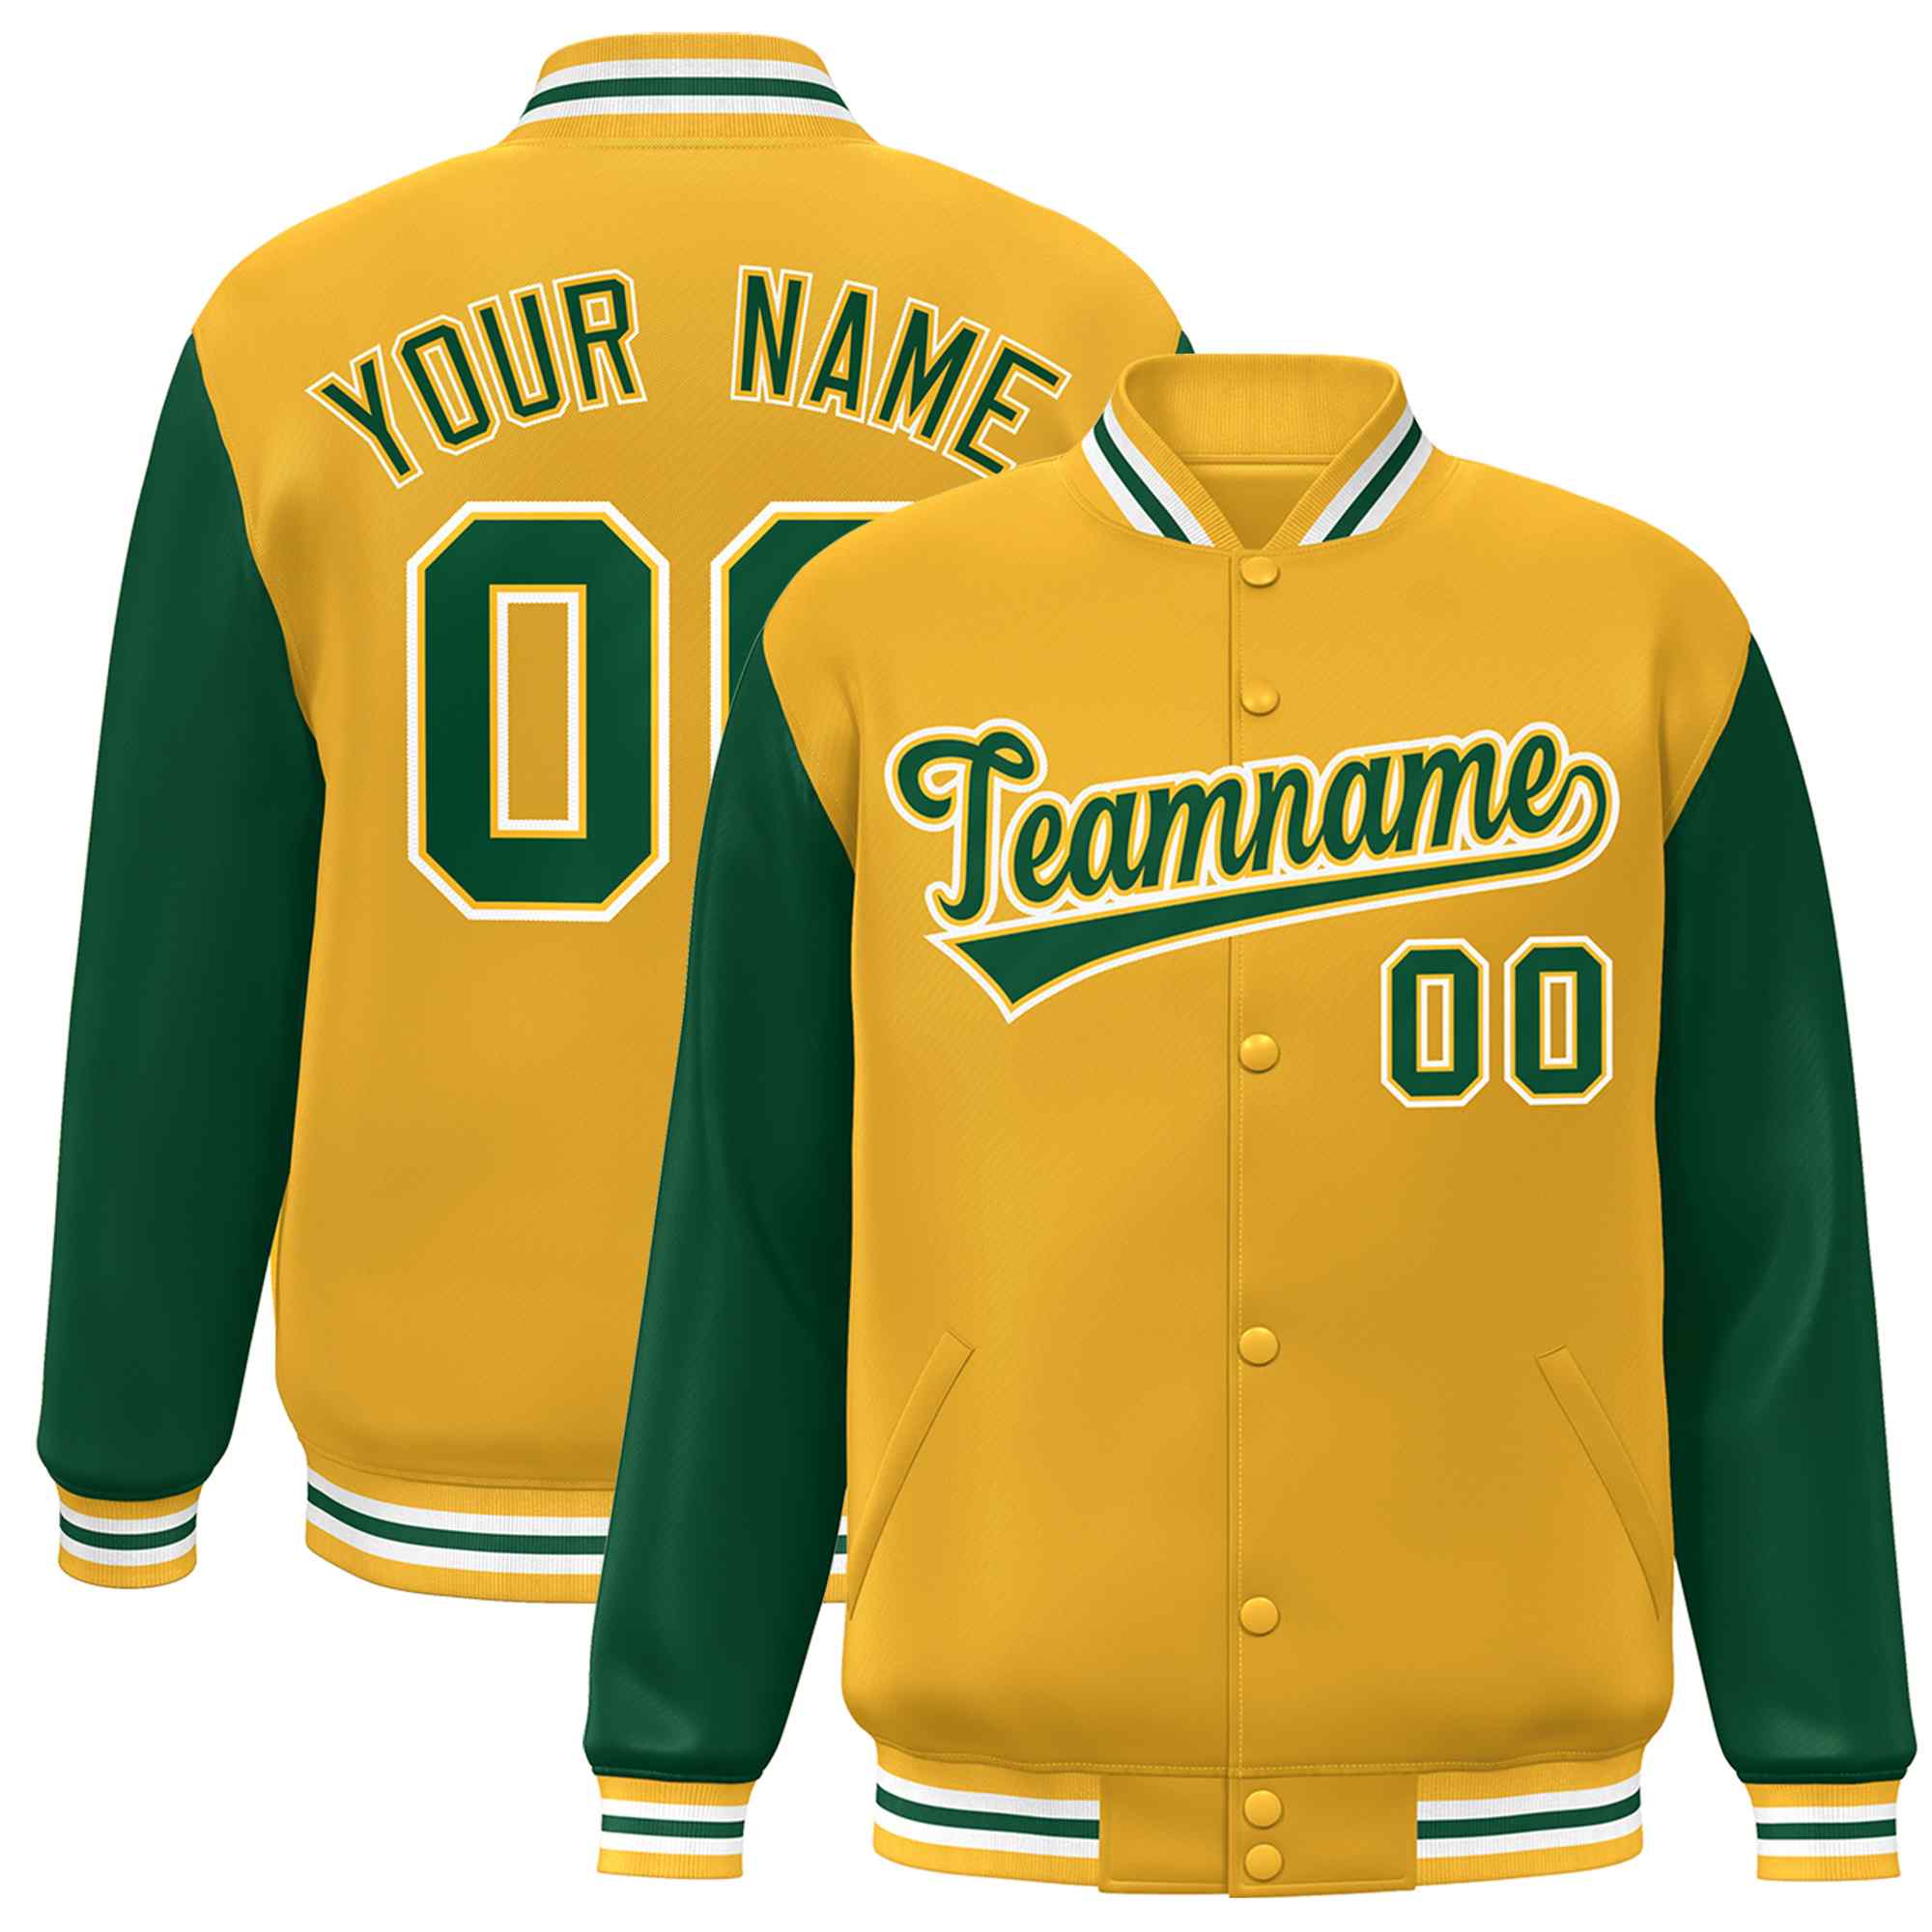 baseball uniform jacket for teams